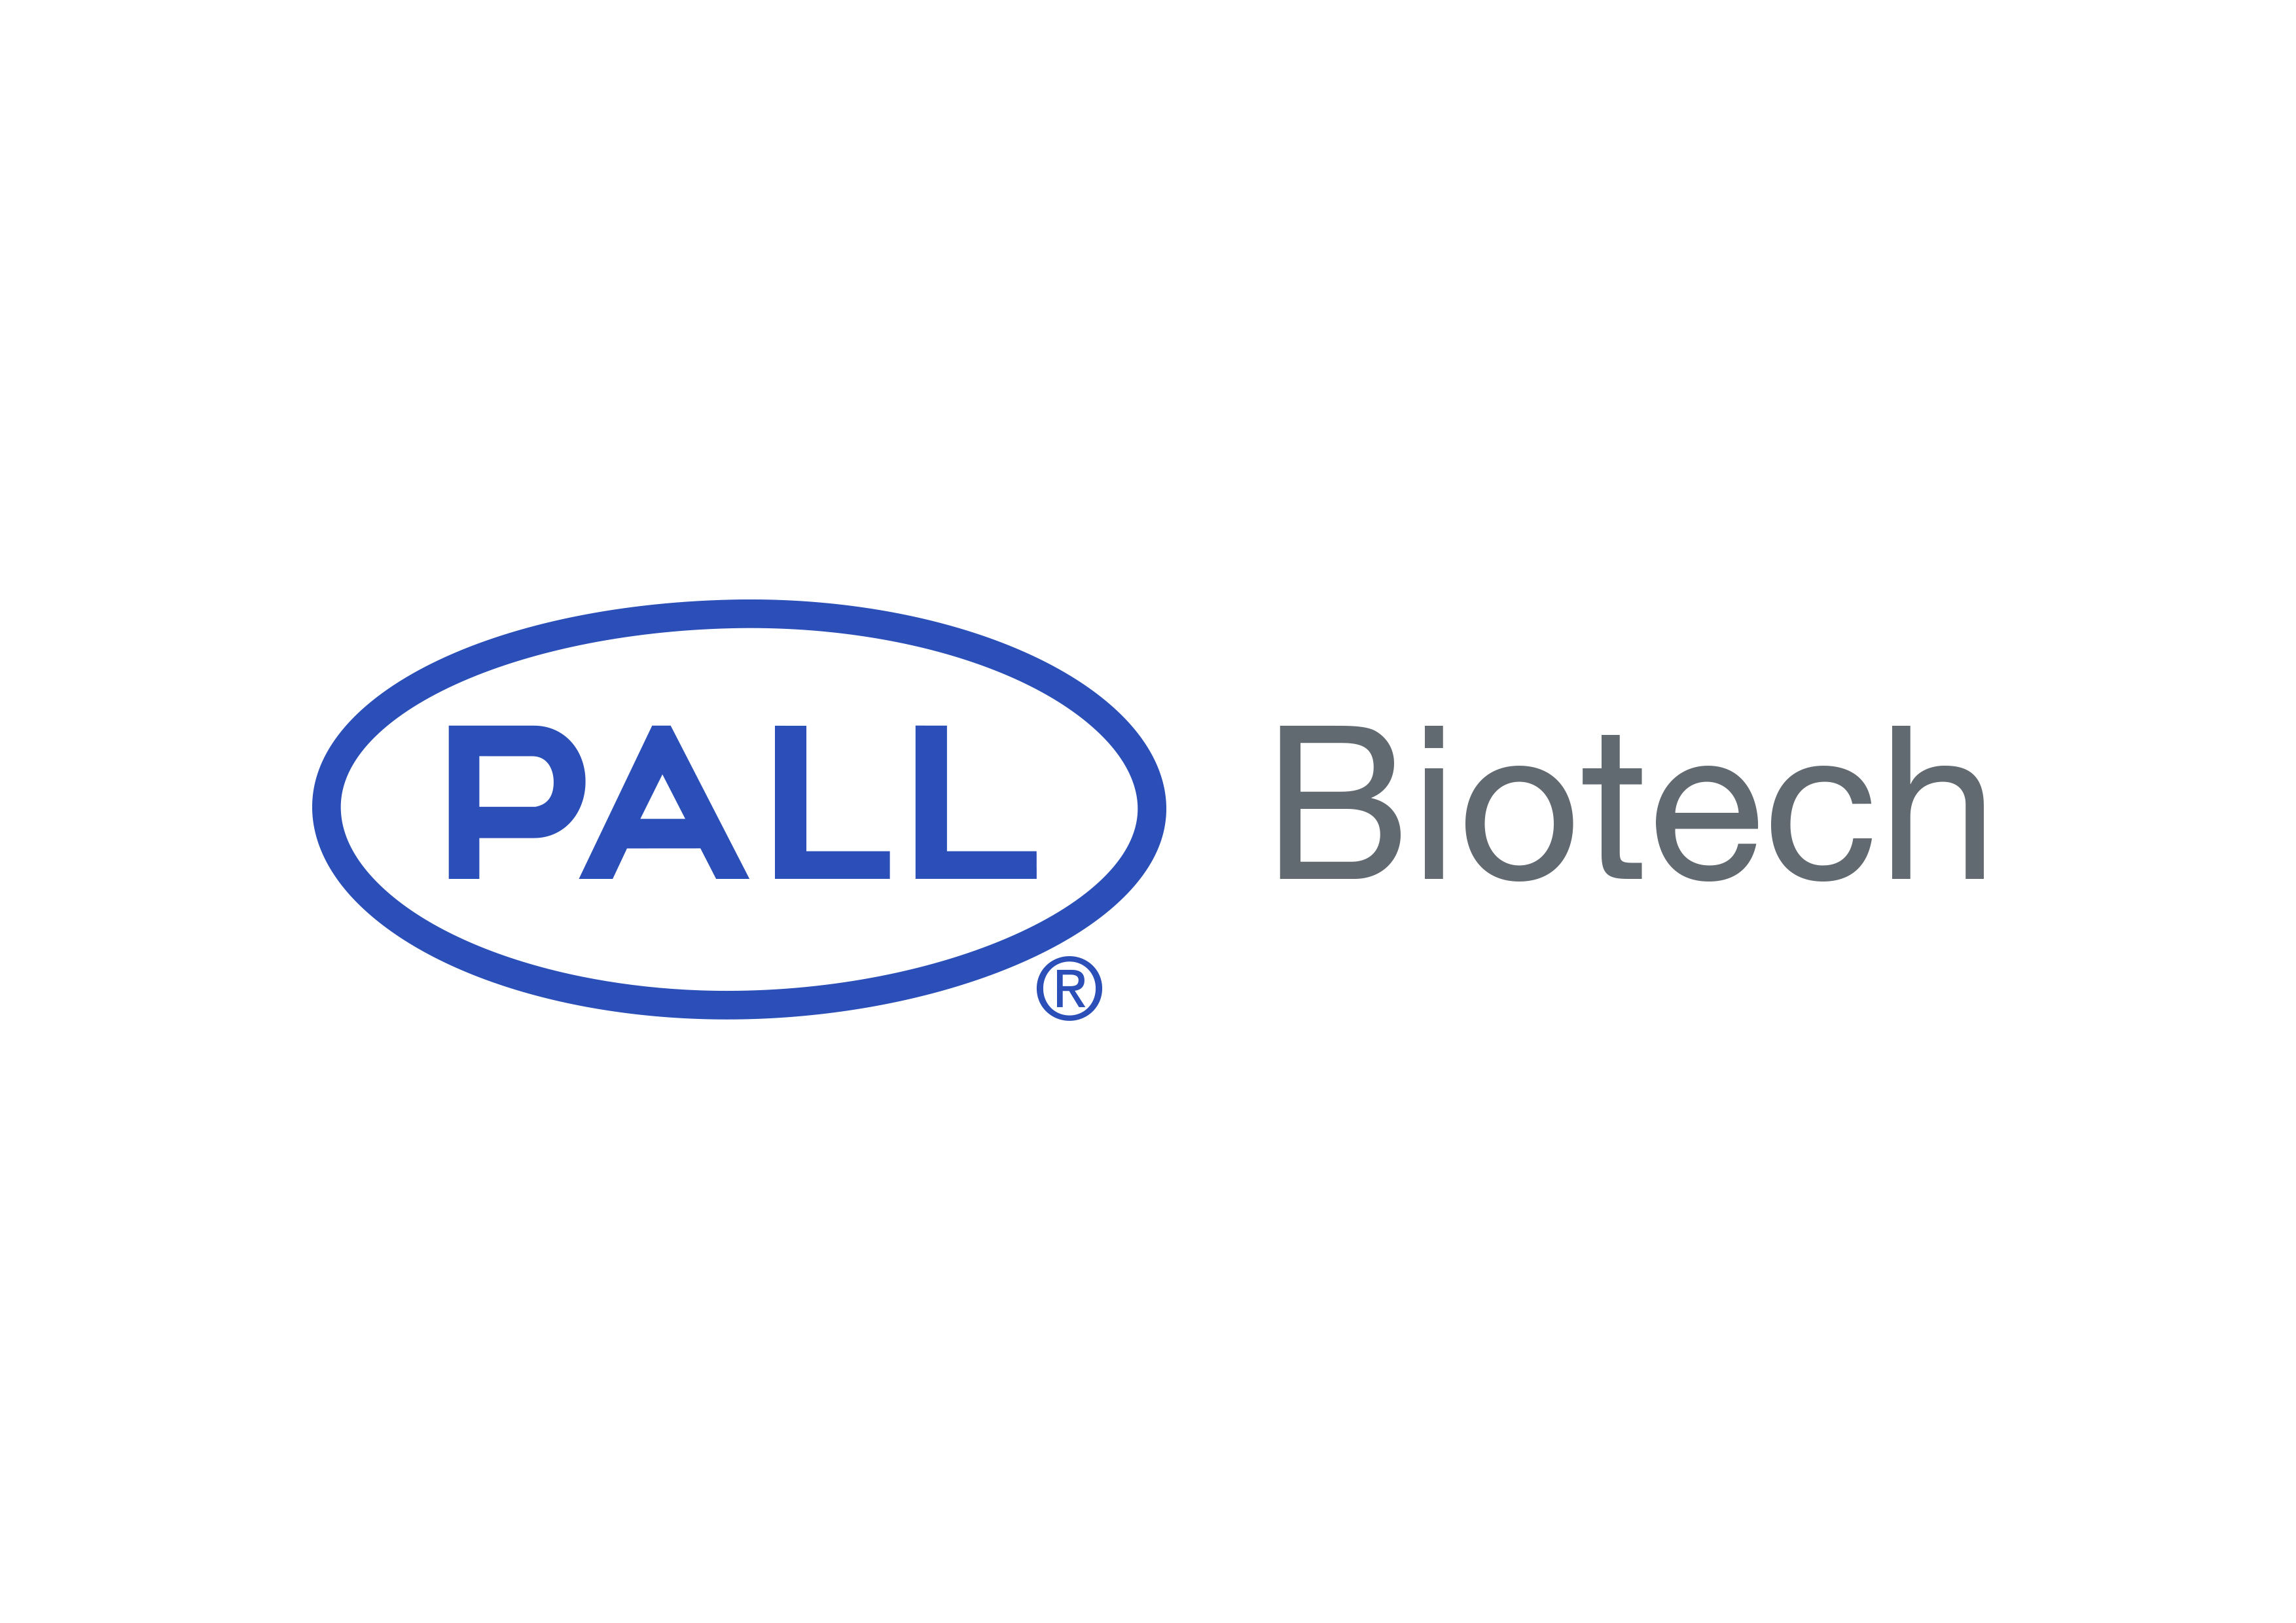 Pall GmbH